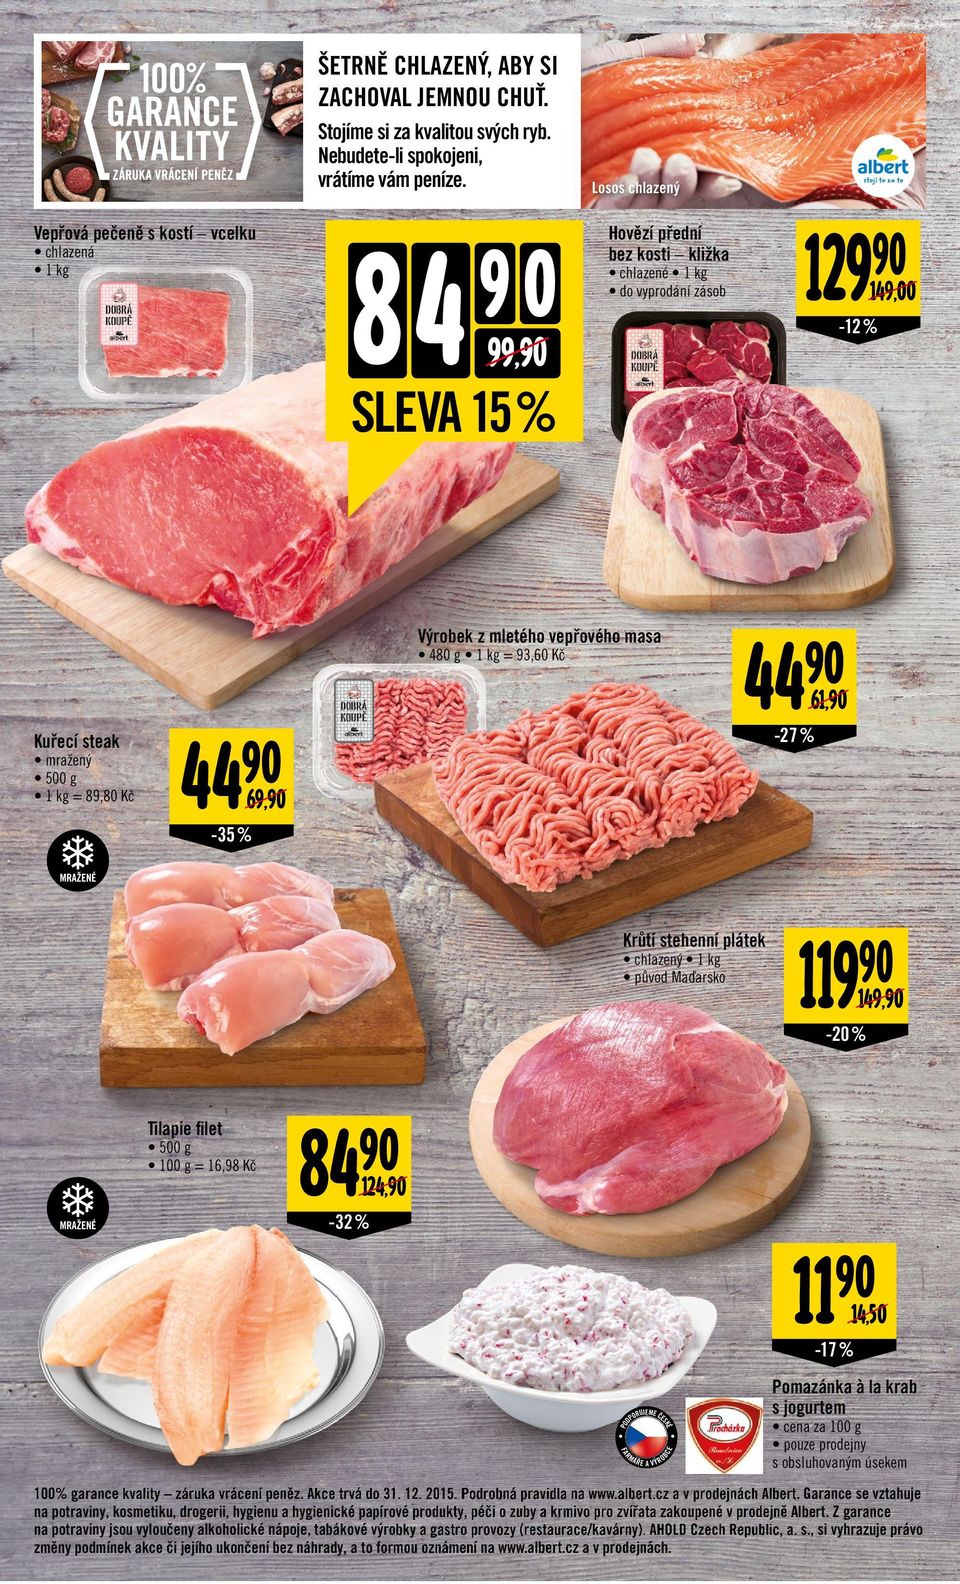 kg = 93,60 Kč 61, Kuřecí steak mražený 500 g 1 kg = 89,80 Kč -27 % 44 69, -35 % MRAŽN Krůtí stehenní plátek chlazený 1 kg původ Maďarsko 119 149, Tilapie filet 500 g = 16,98 Kč MRAŽN 84 124, -32 % 11